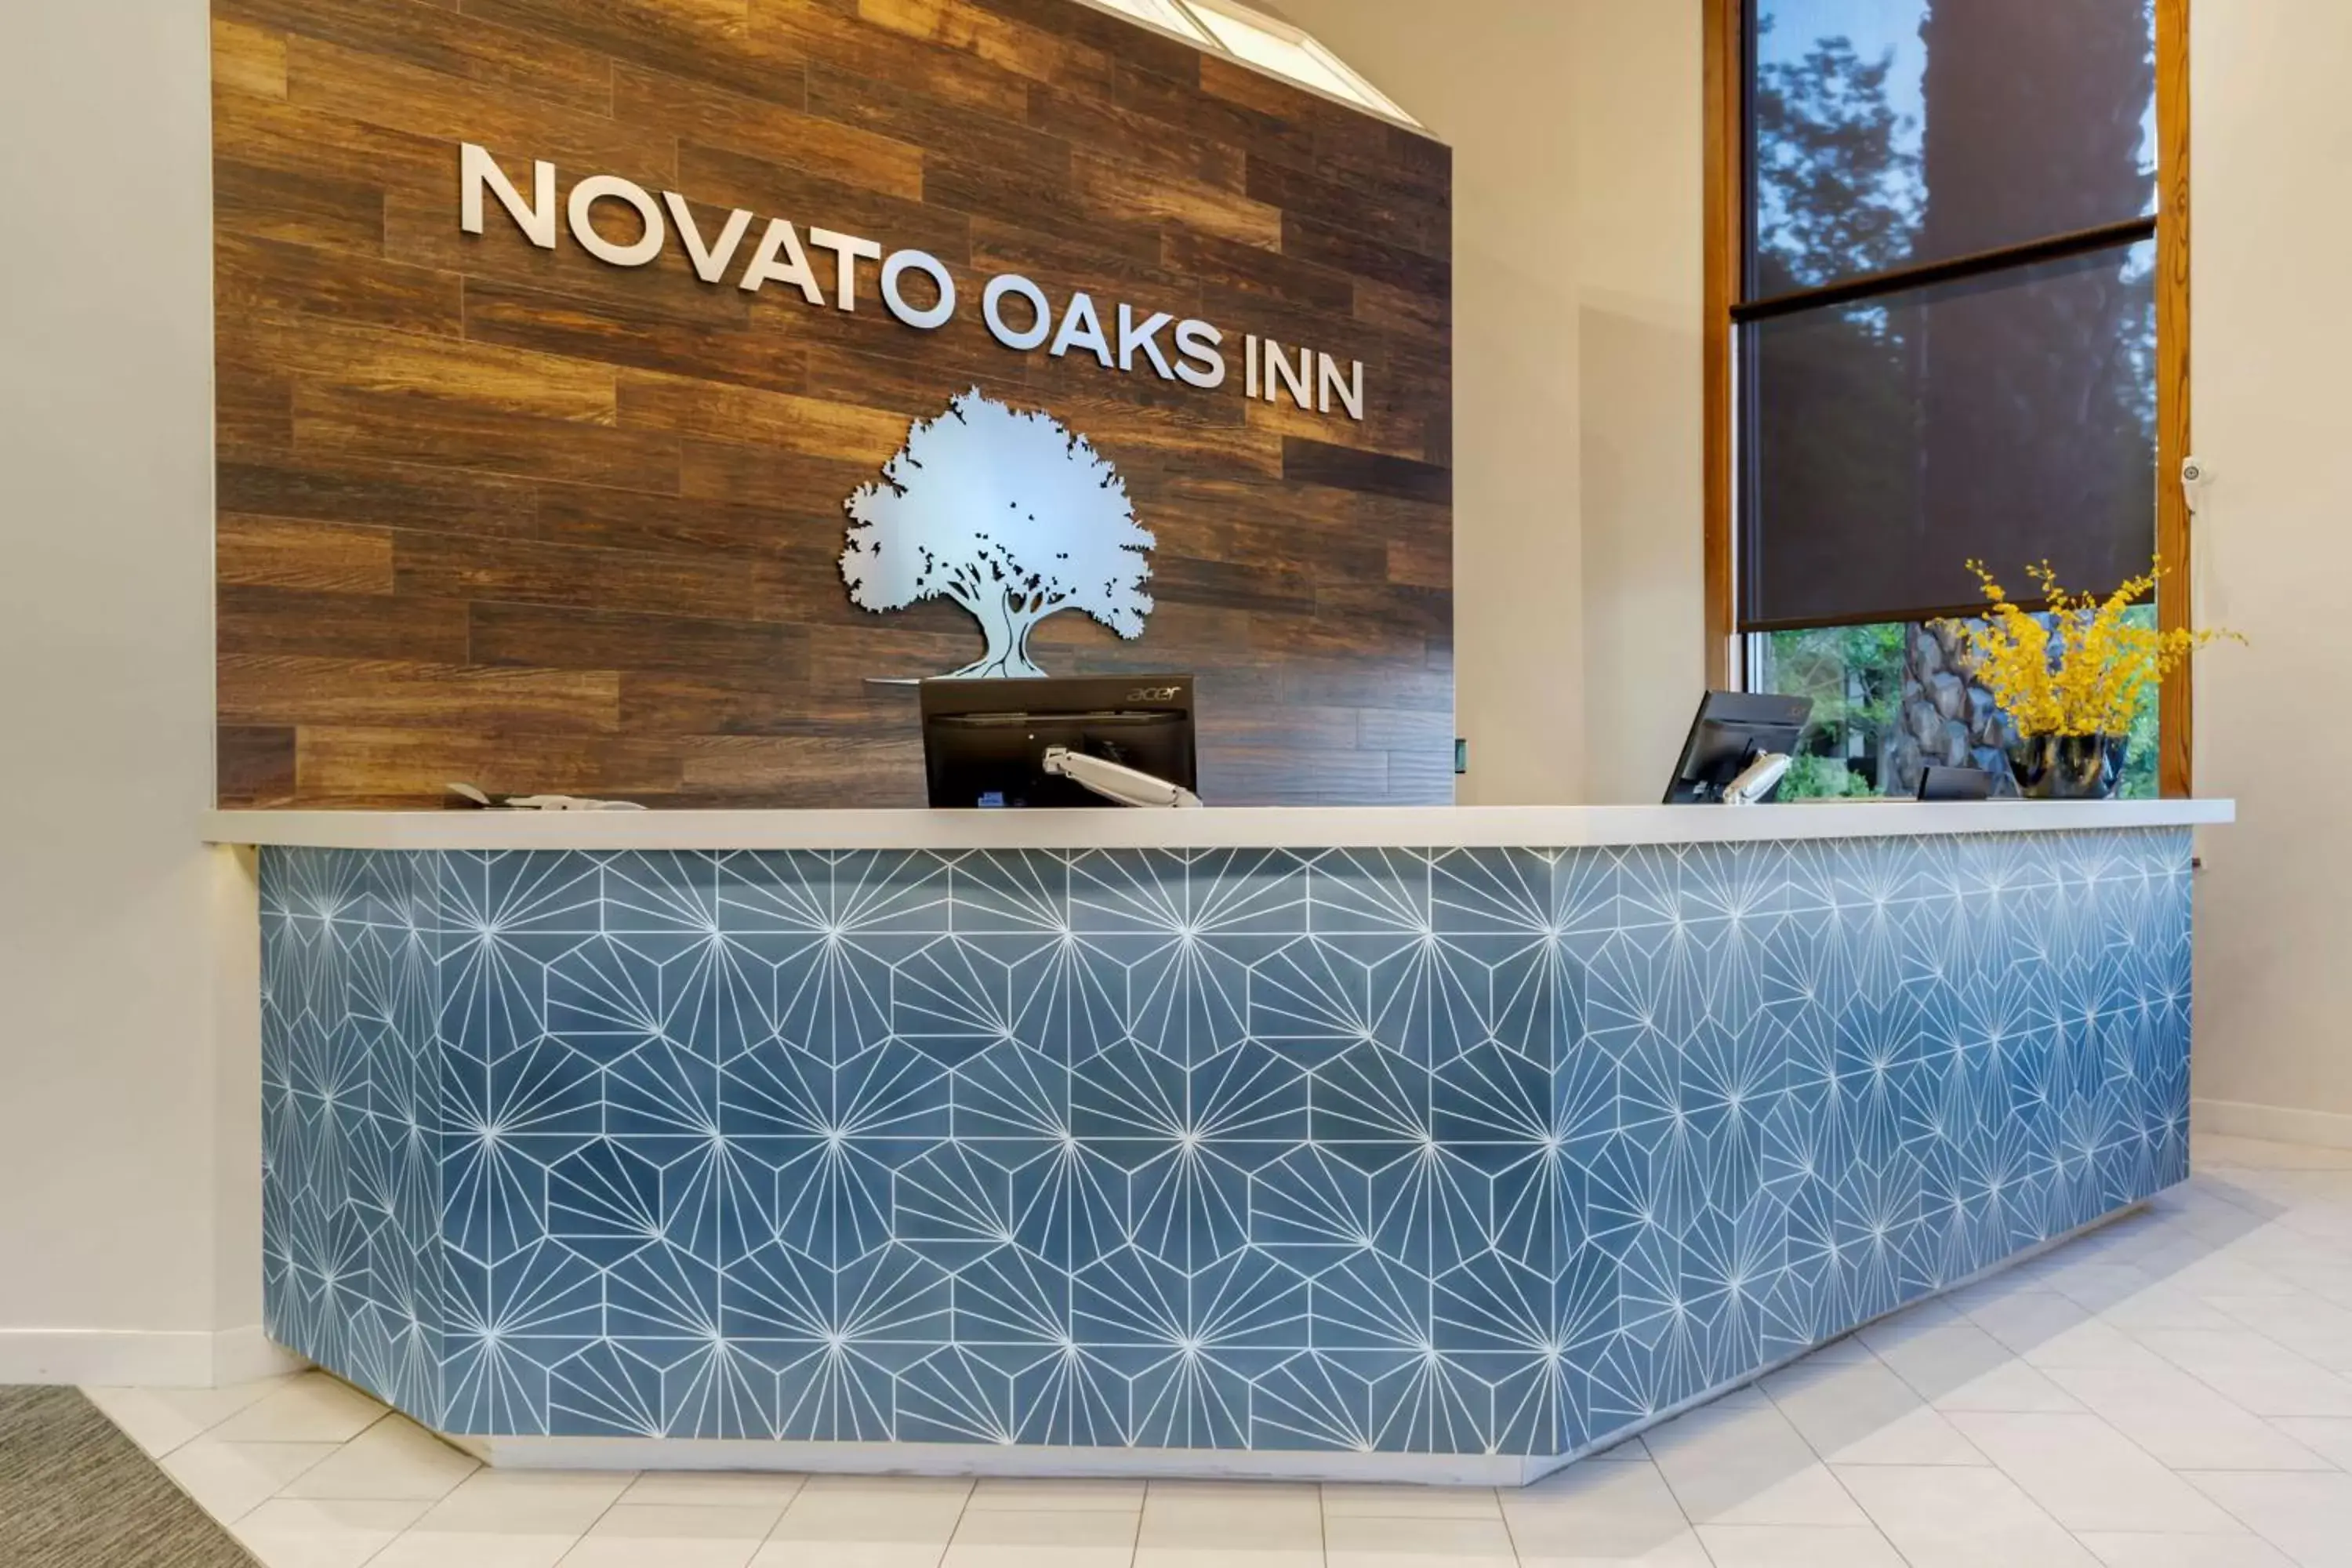 Lobby or reception, Lobby/Reception in Best Western Plus Novato Oaks Inn